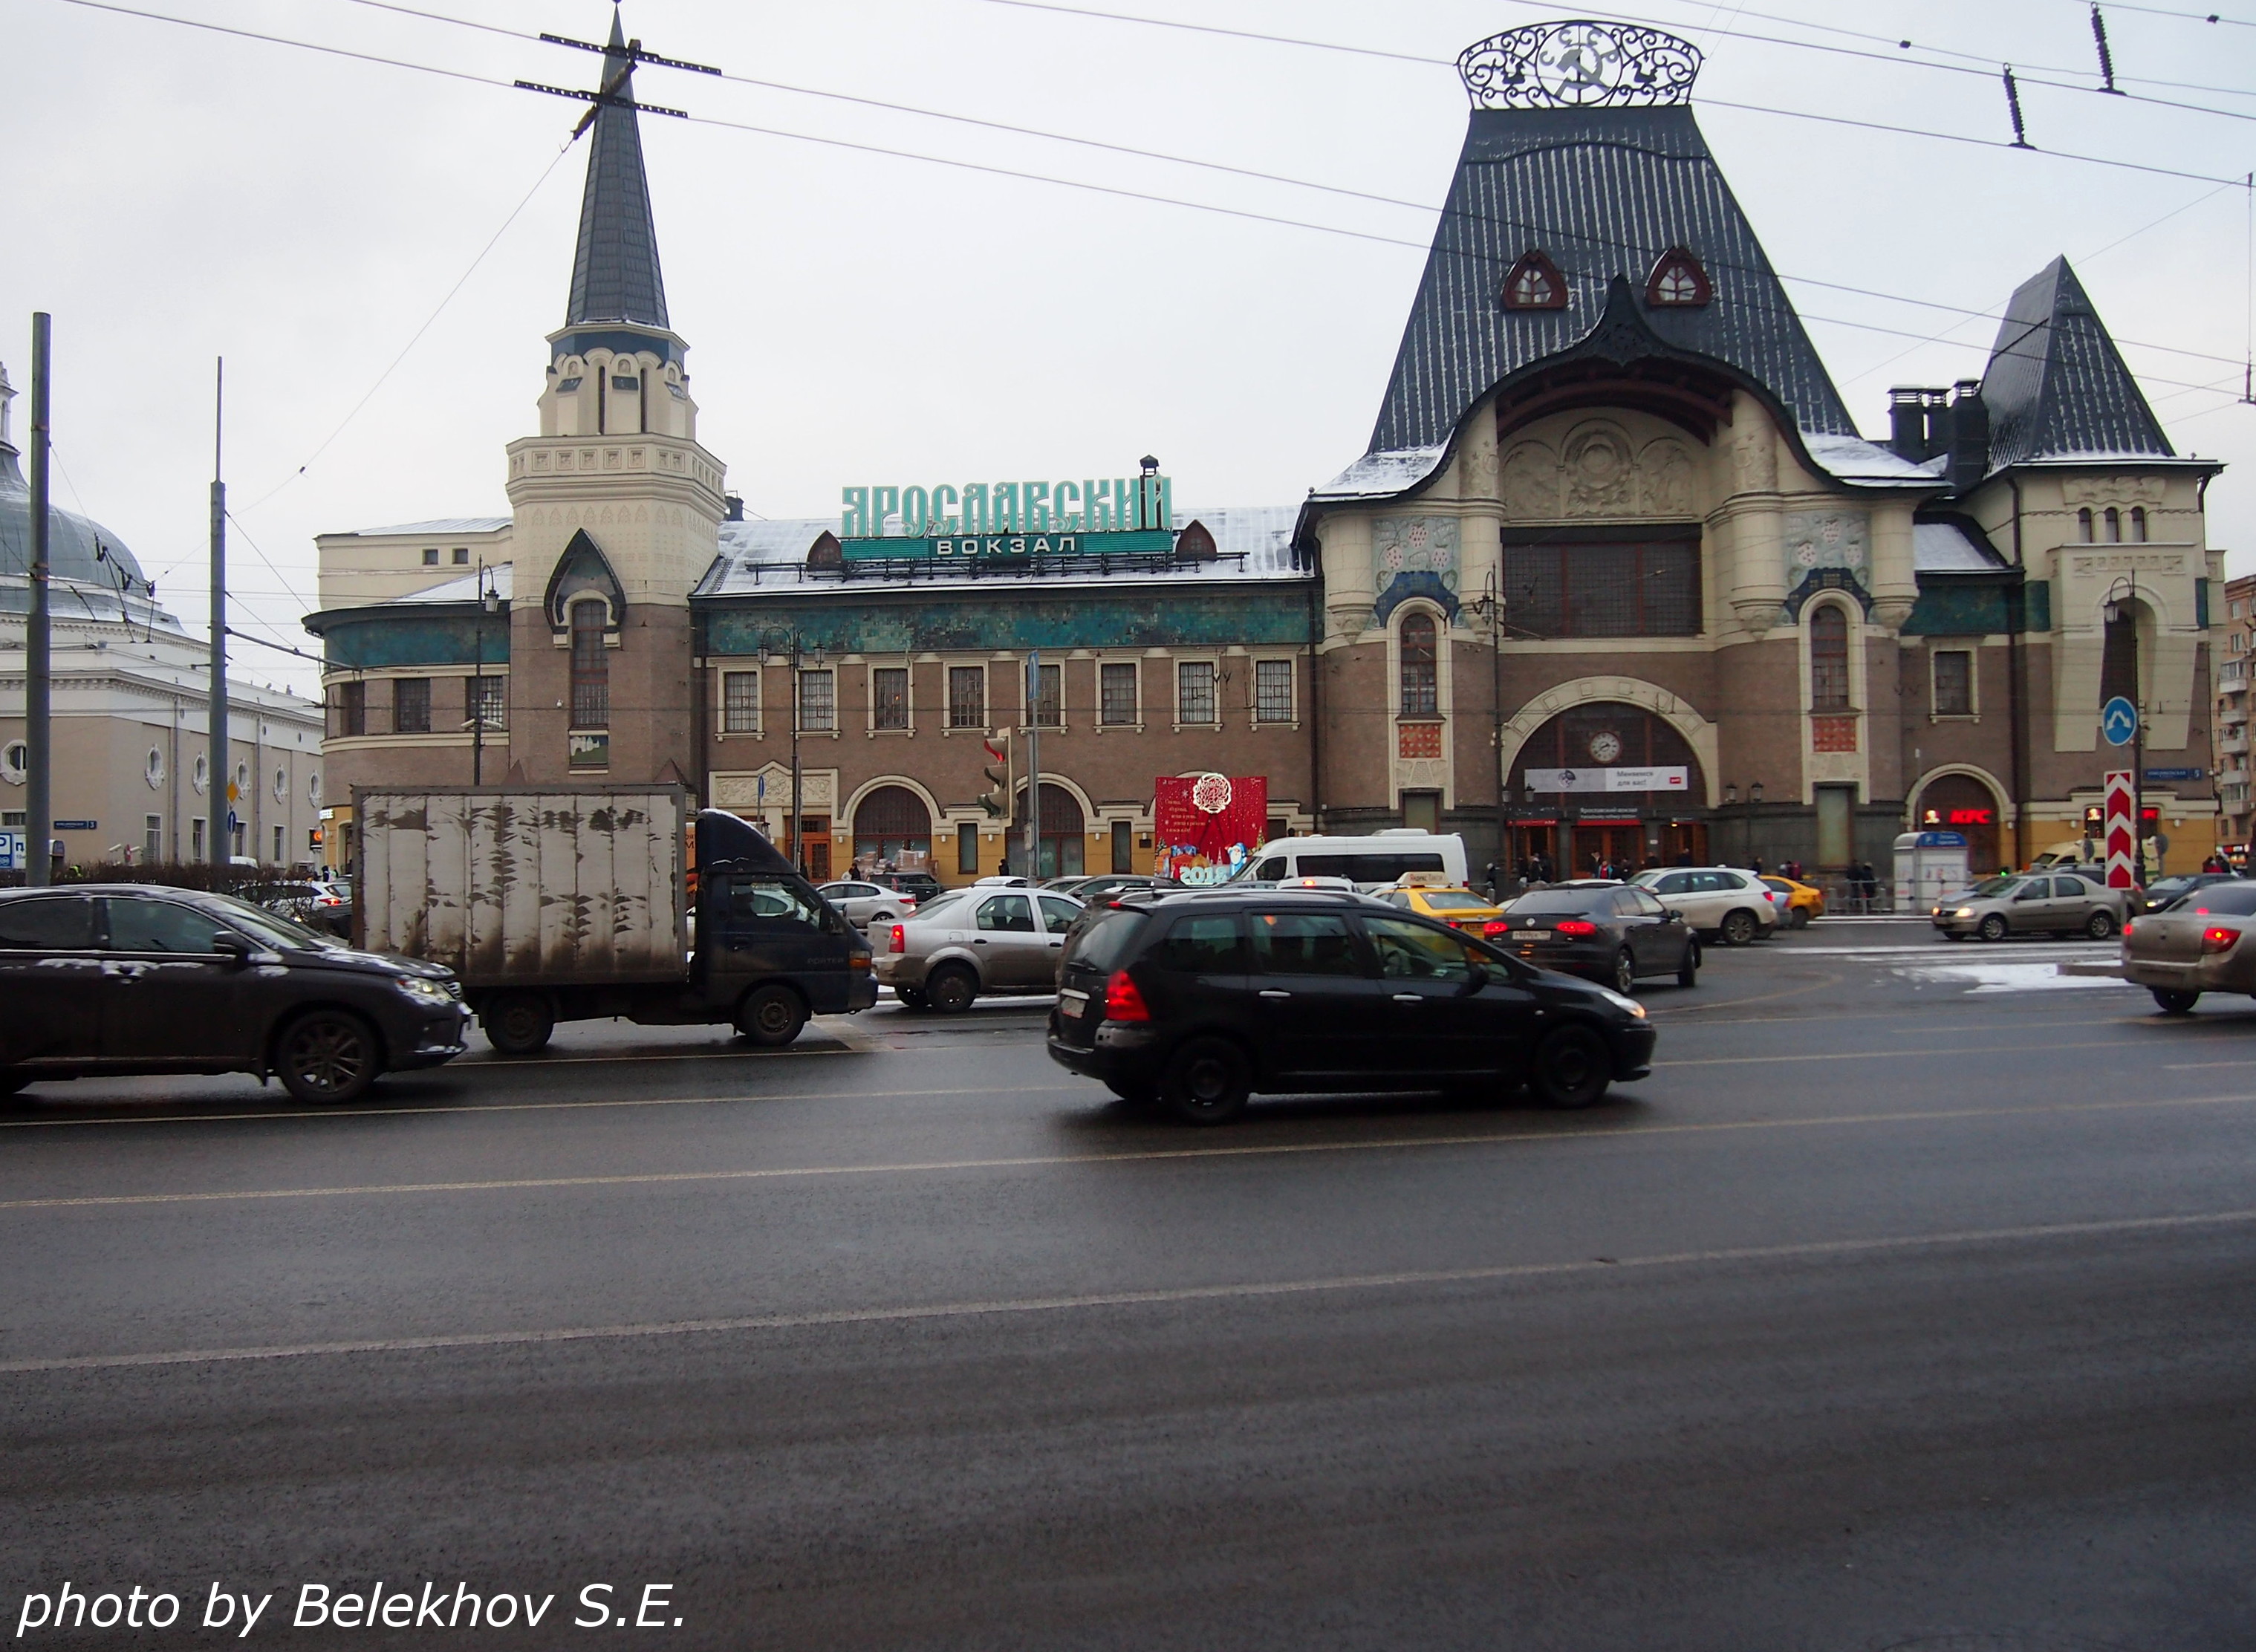 Белорусский вокзал три вокзала